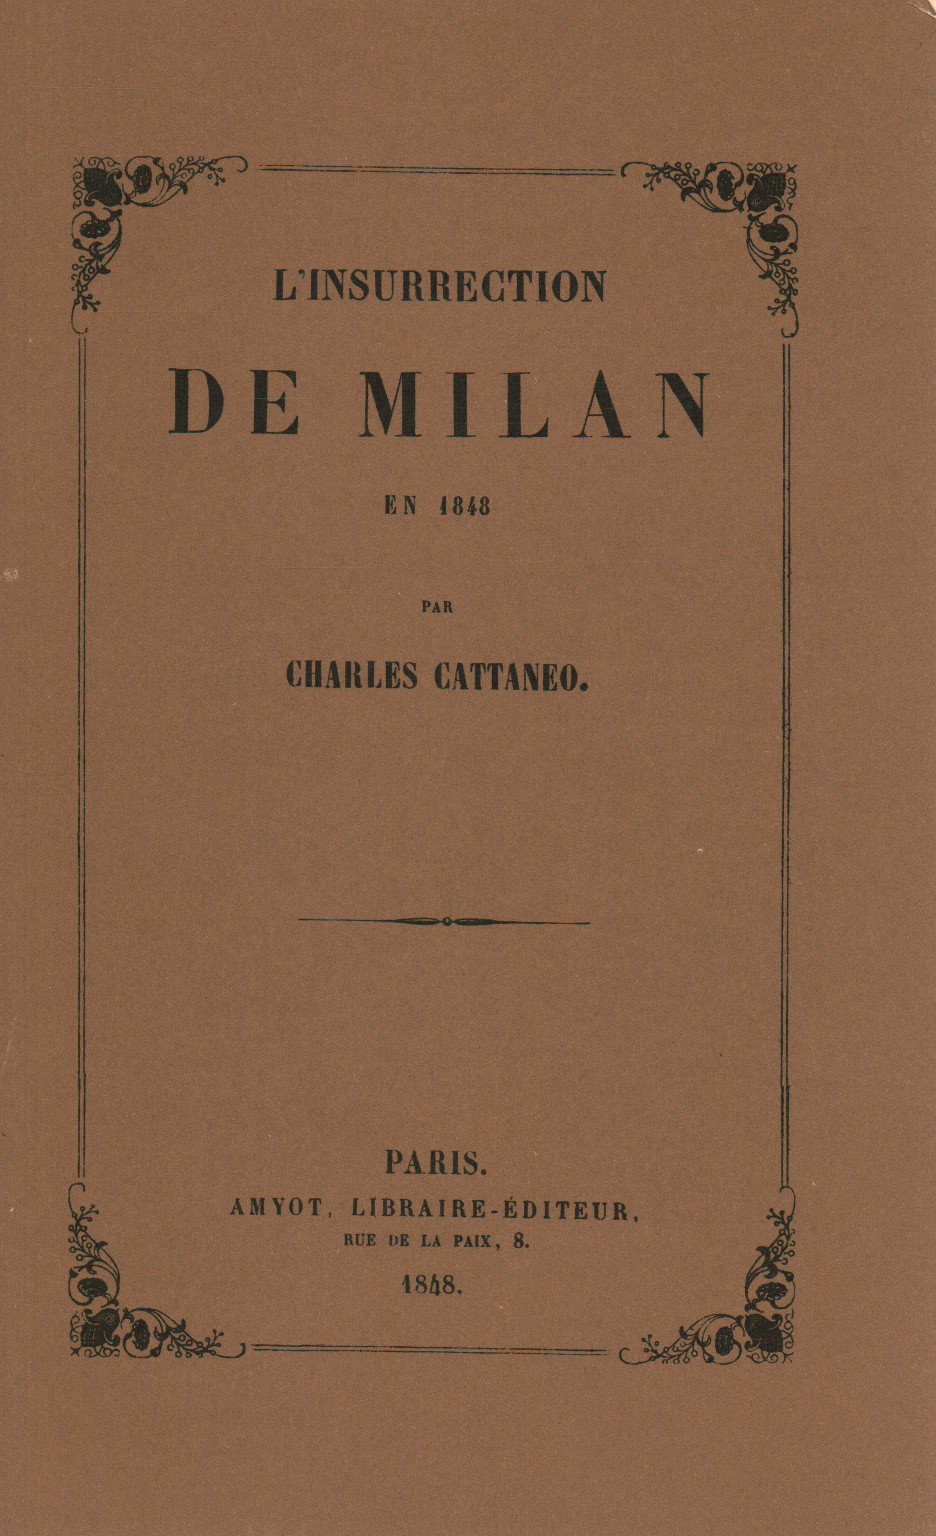 L'insurrection de Milan en 1848, s.a.